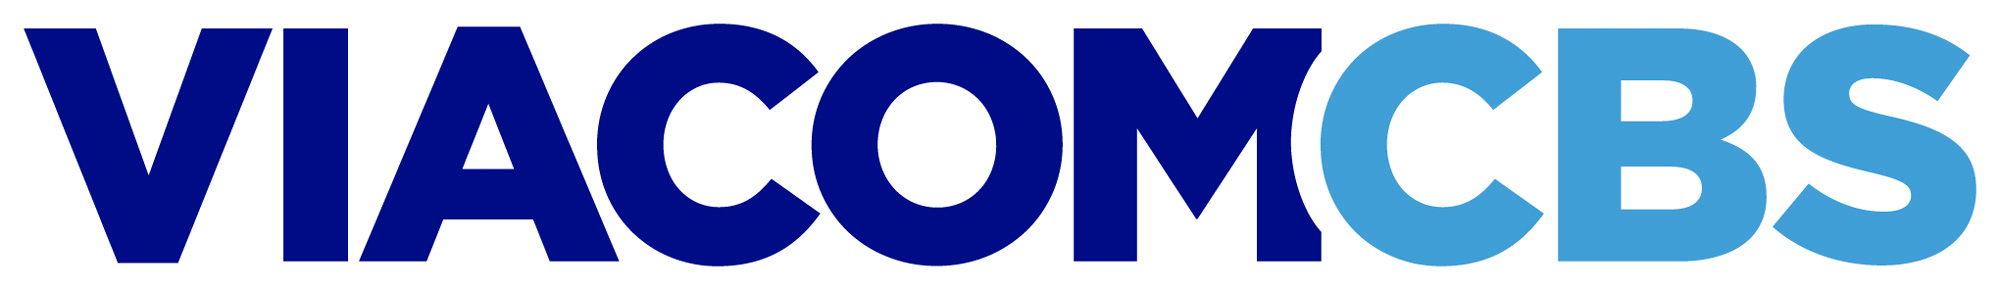 viacomcbs_logo